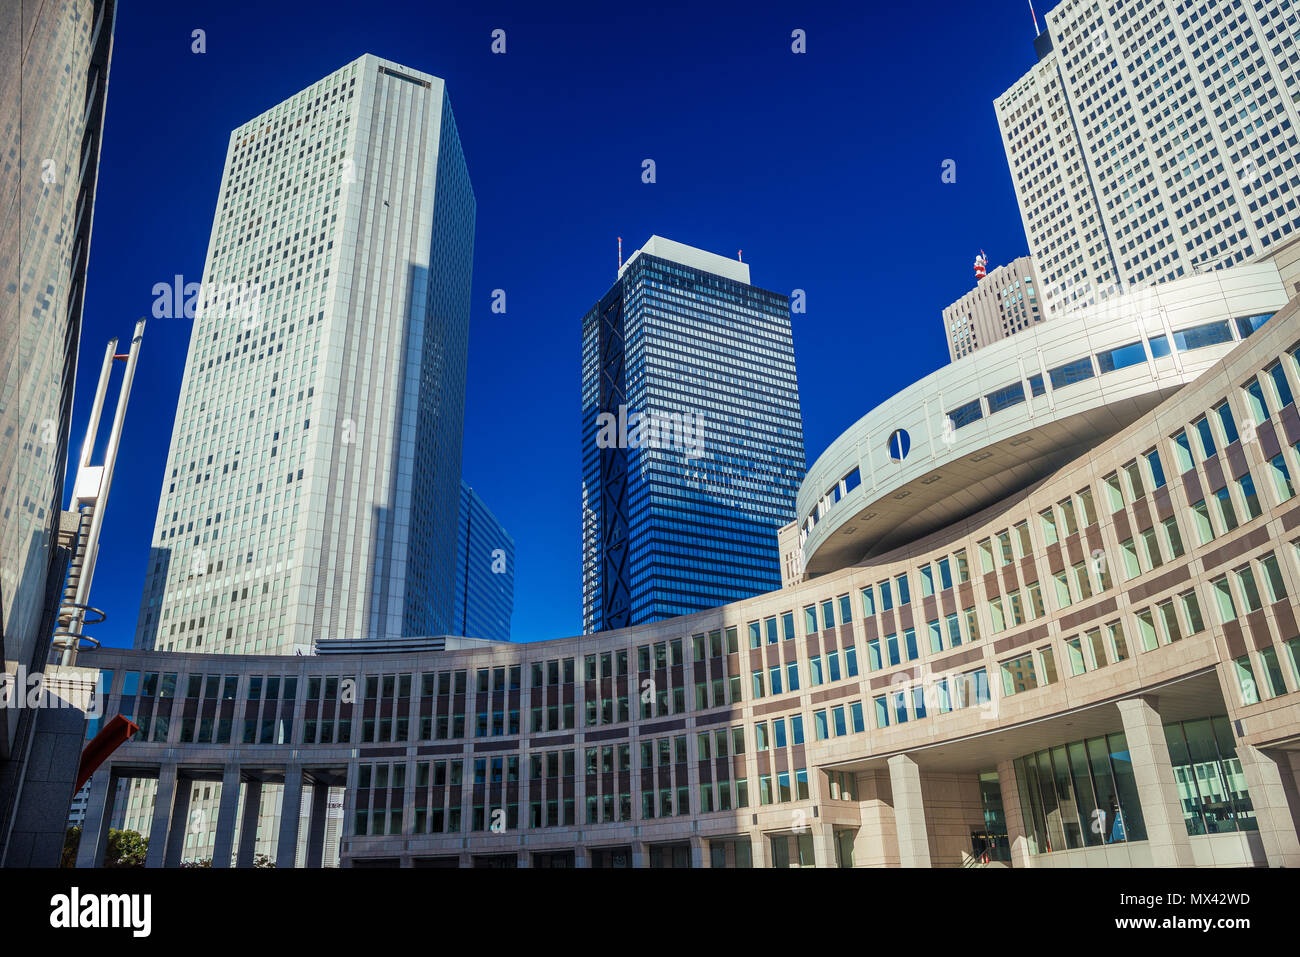 Les gratte-ciel modernes s'élevant au-dessus de l'assemblée métropolitaine de Tokyo dans le quartier de Shinjuku Banque D'Images